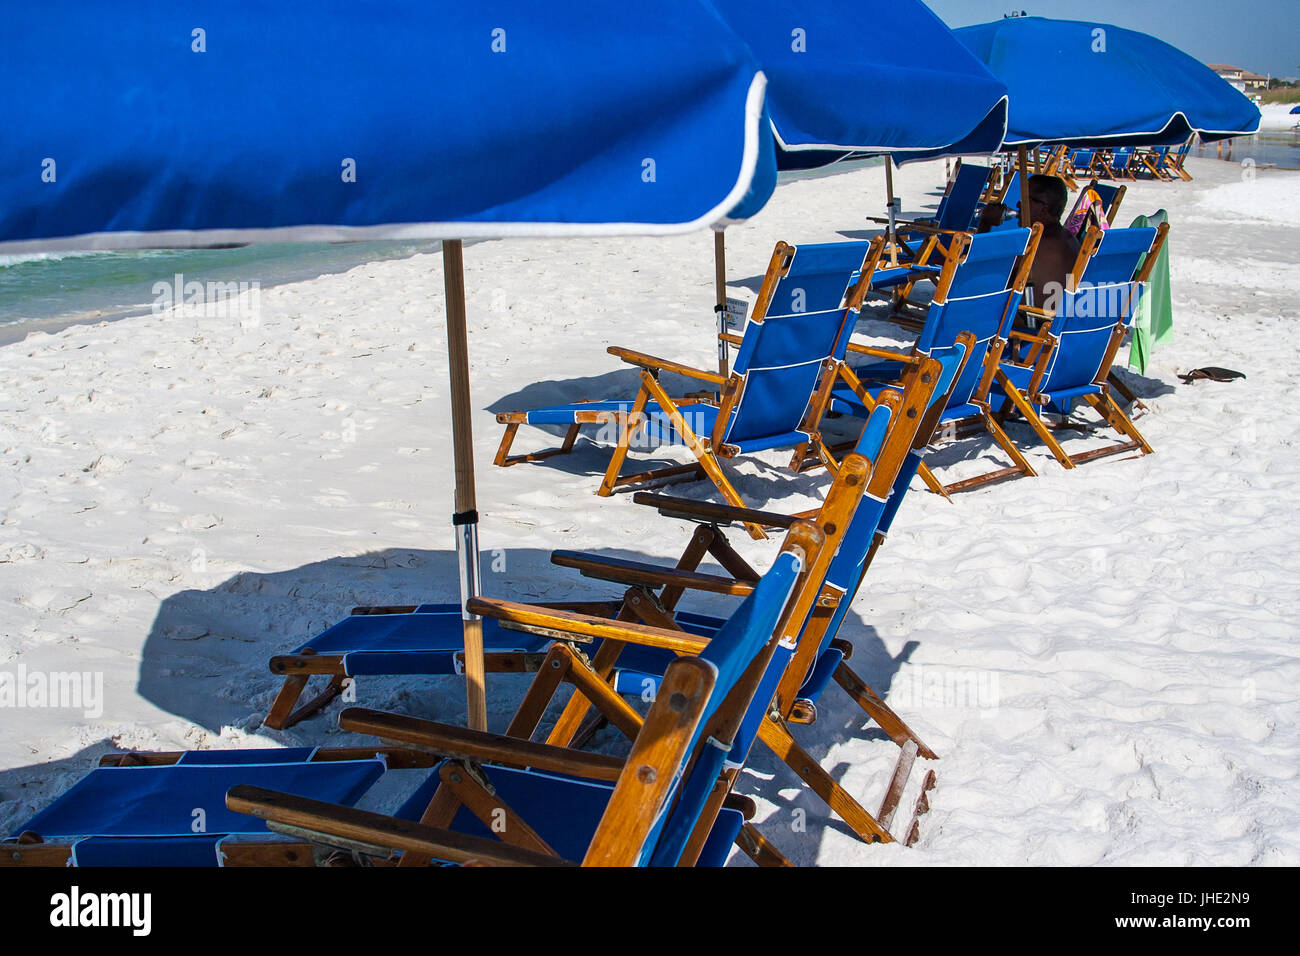 Una fila de sillas de playa y sombrillas azules que se establecieron a lo largo del agua. Foto de stock